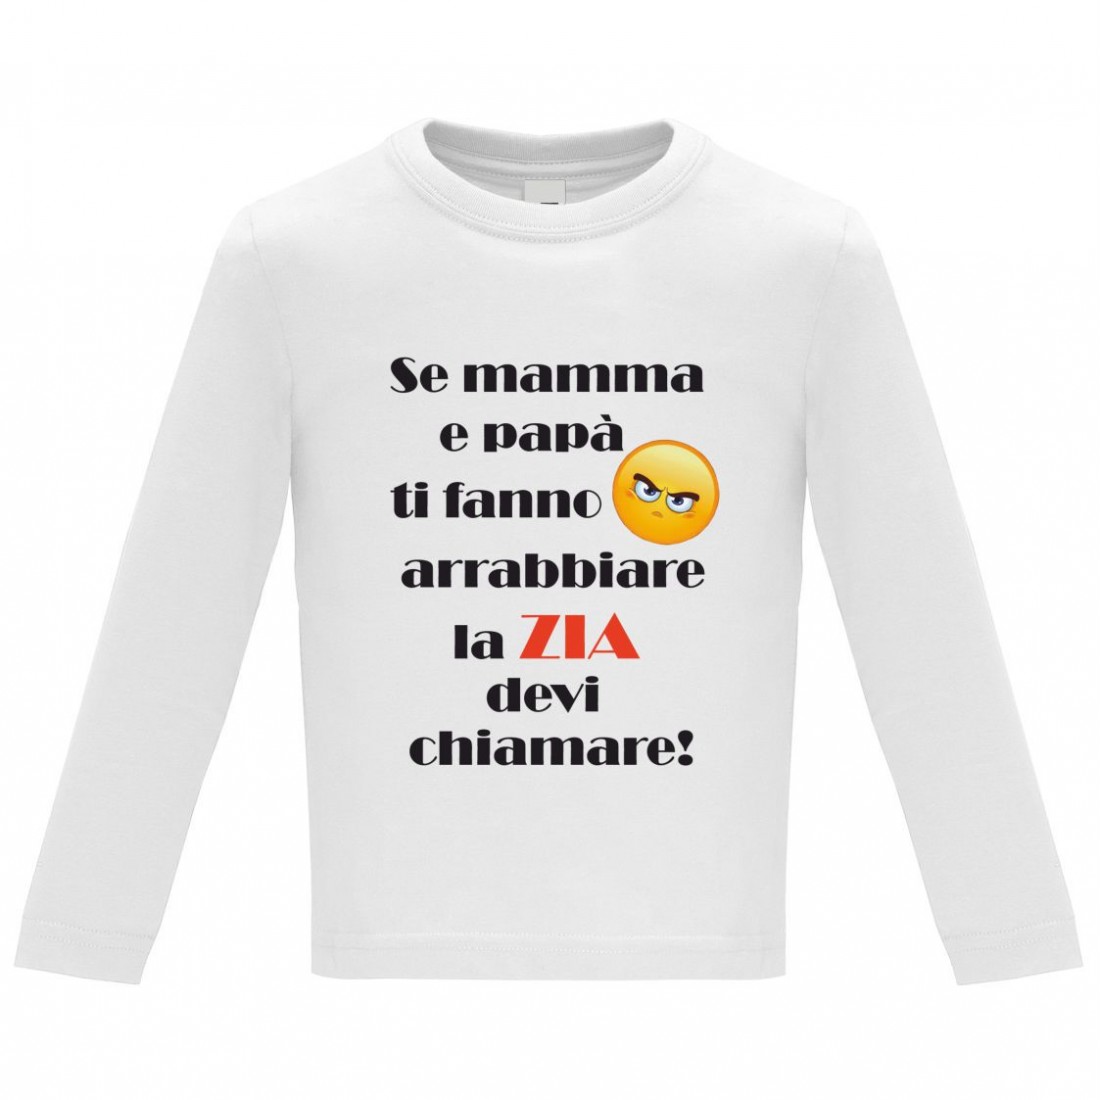 Brums T-Shirt Jersey Stampa Animal Maglietta a Manica Lunga Bimbo 